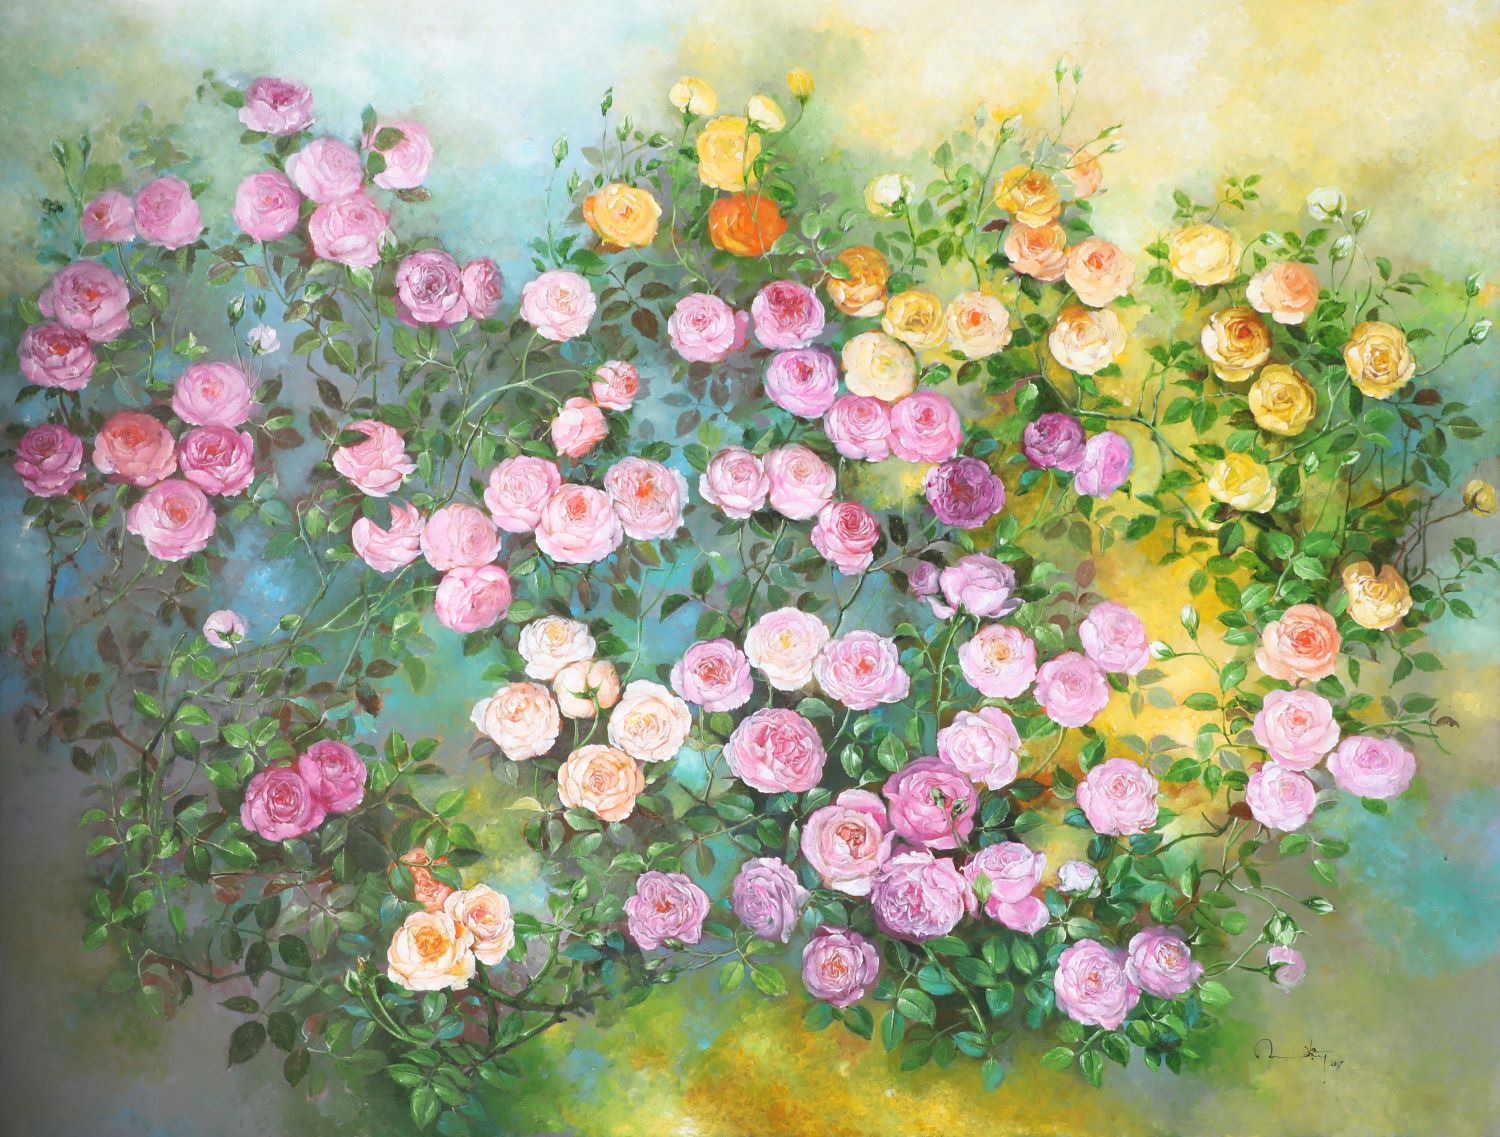 Roses VIII - Vietnamese Oil Paintings Flower by Artist An Dang